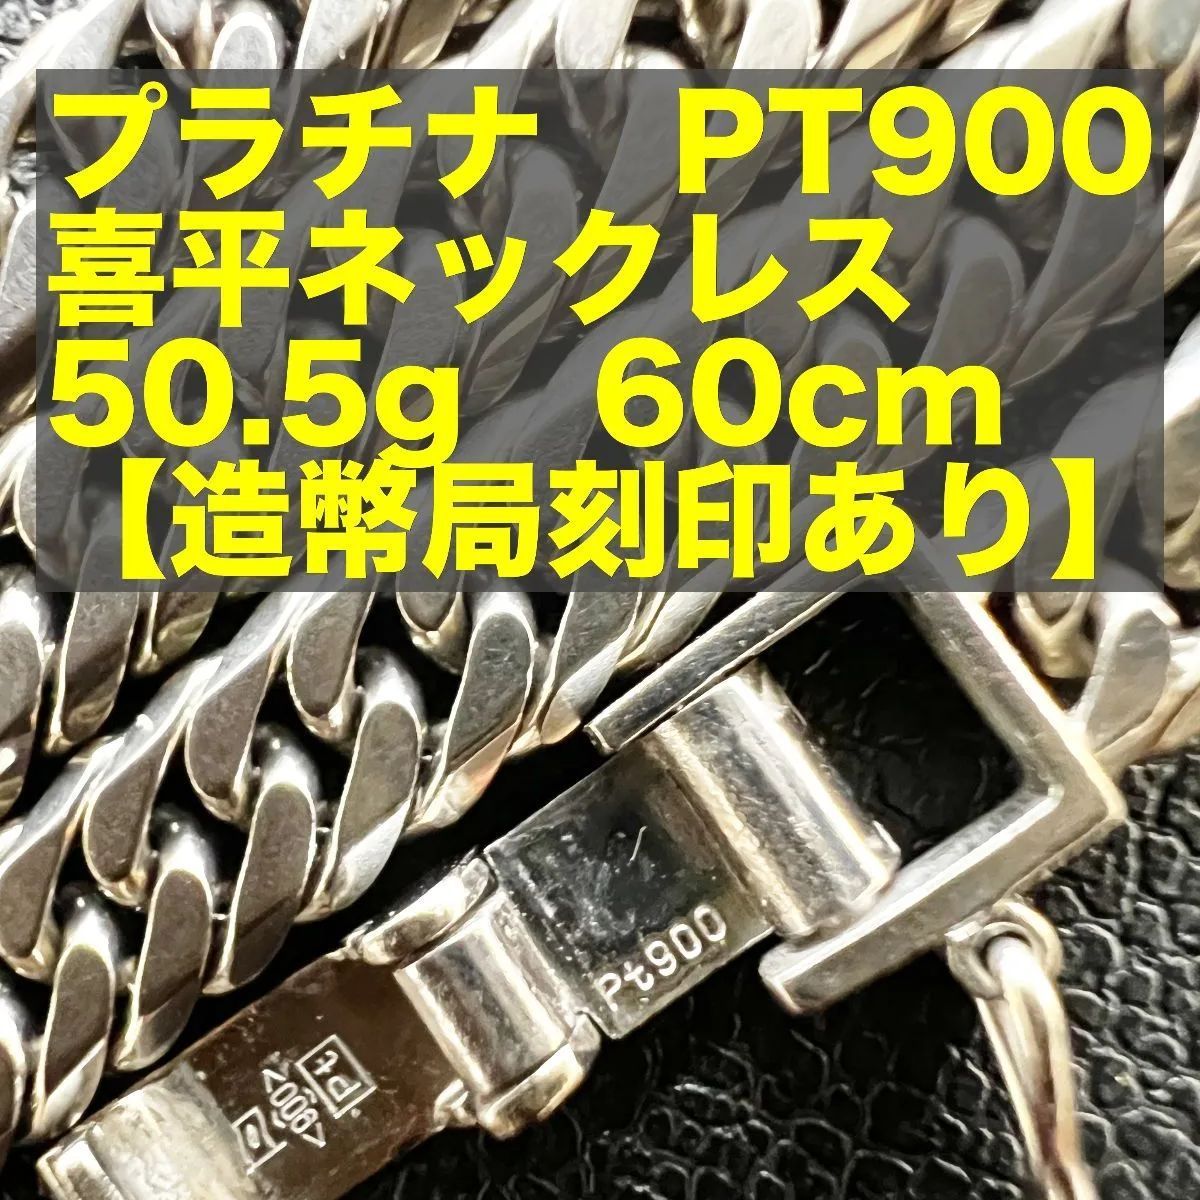 造幣局刻印あり】PT900 喜平ネックレス 50.5g 60cm - ZEROKUMA ...